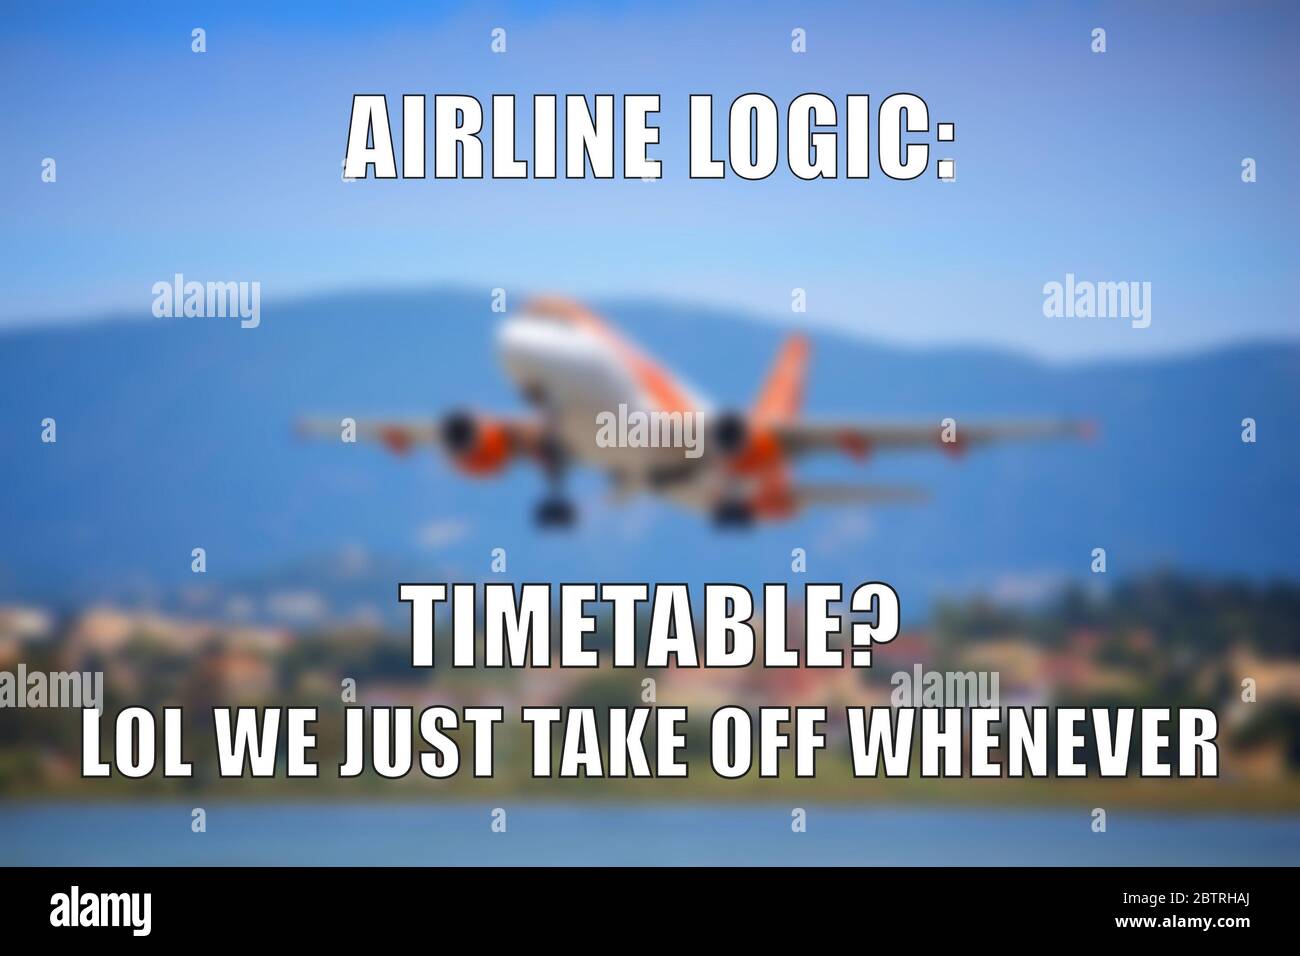 Promemoria divertente per la condivisione dei social media con la logica della compagnia aerea. Ritardo della linea aerea. Foto Stock